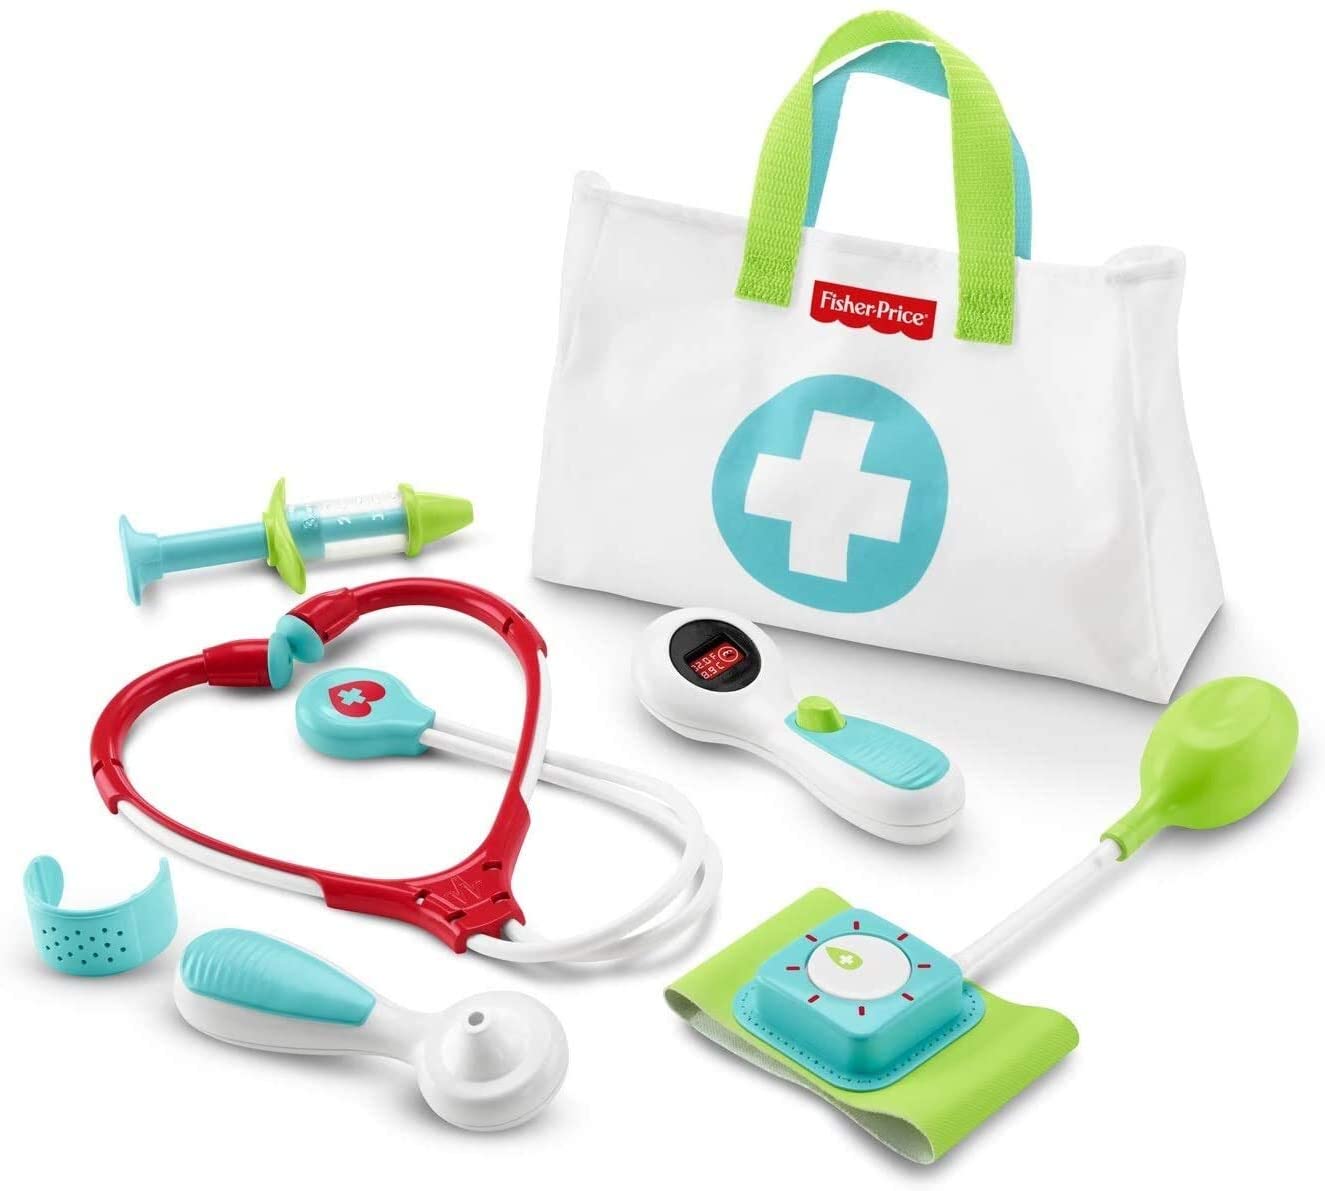 Fisher-Price Medical Kit Playset $8.74 - Amazon